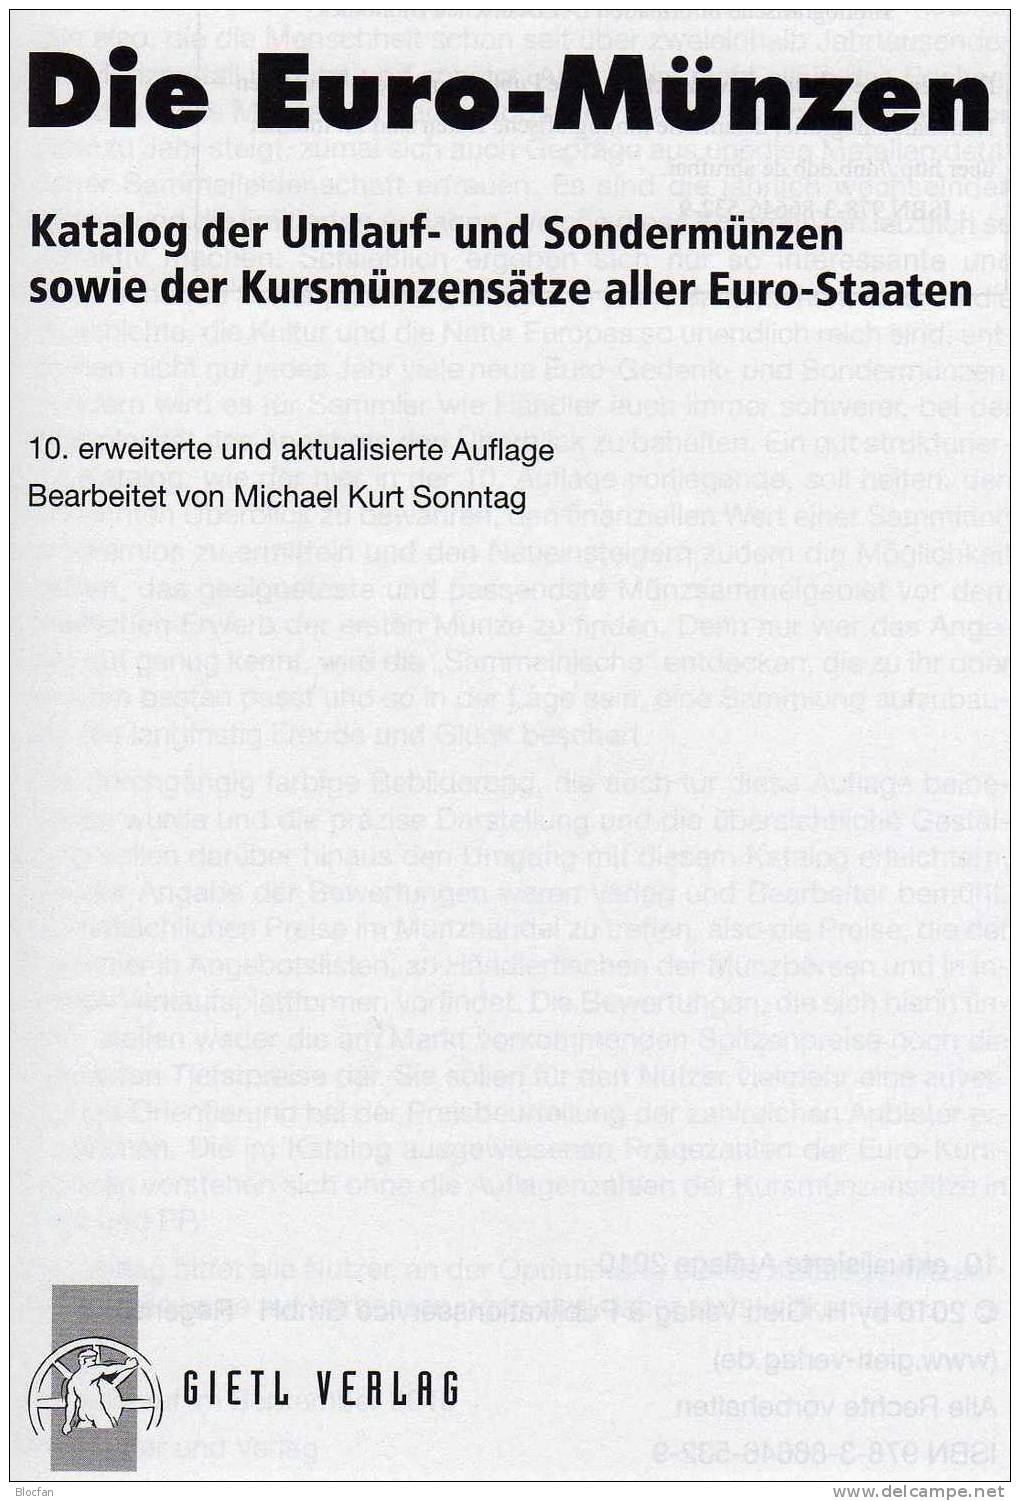 Die EURO-Münzen Katalog 2011 Neu 20€ Deutschland Und Euroländer Für Numis-Briefe, Numisblätter Neueste Auflage Von Gietl - Used Stamps